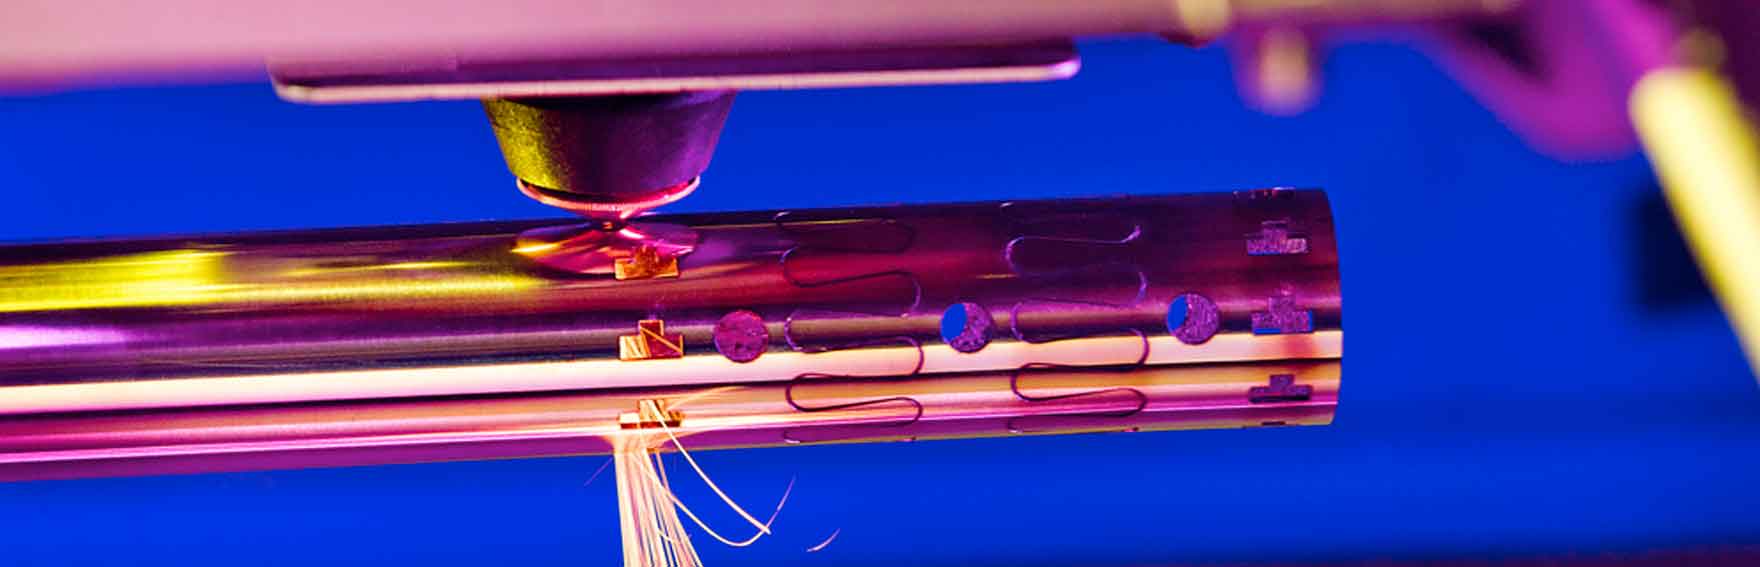 Tecnica del taglio laser su tubo